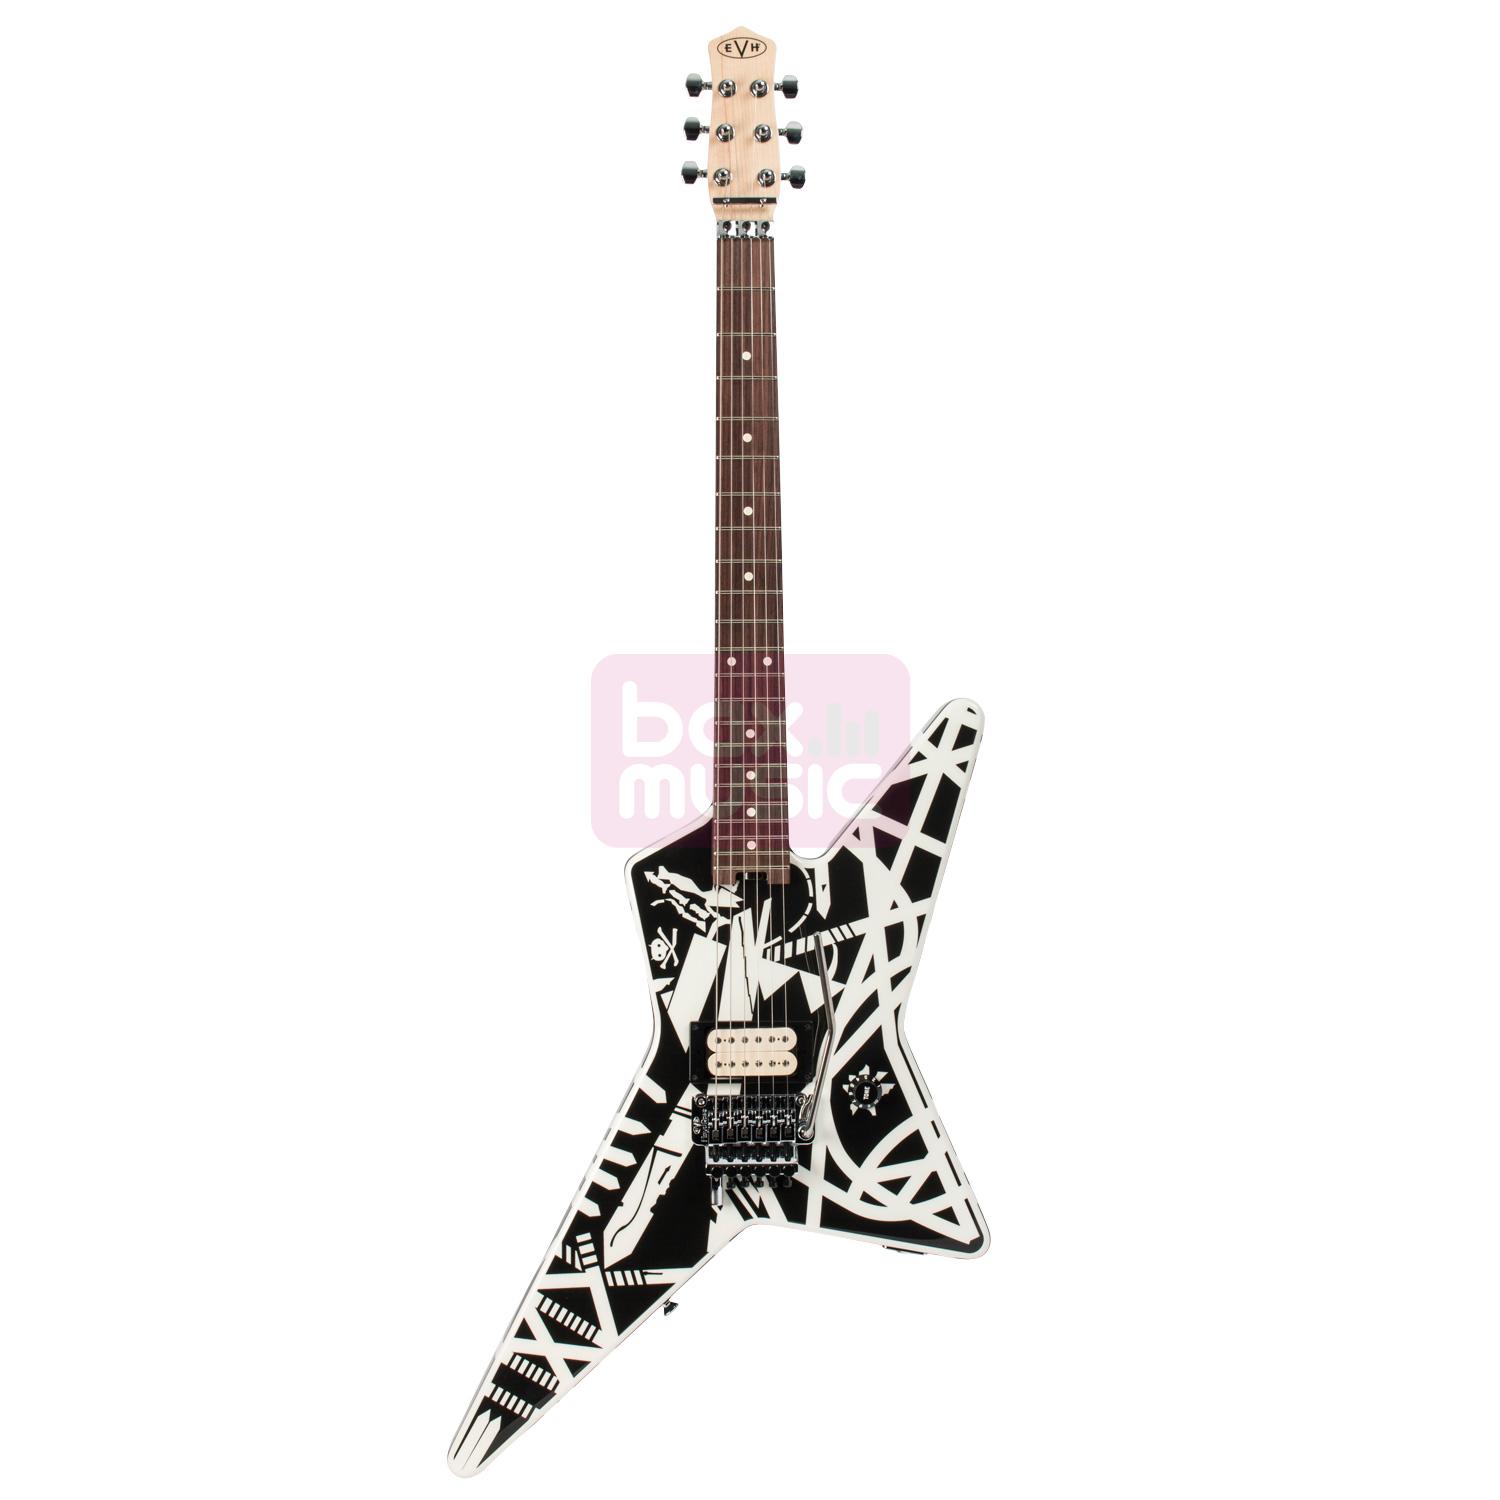 EVH Striped Series Star elektrische gitaar wit-zwart